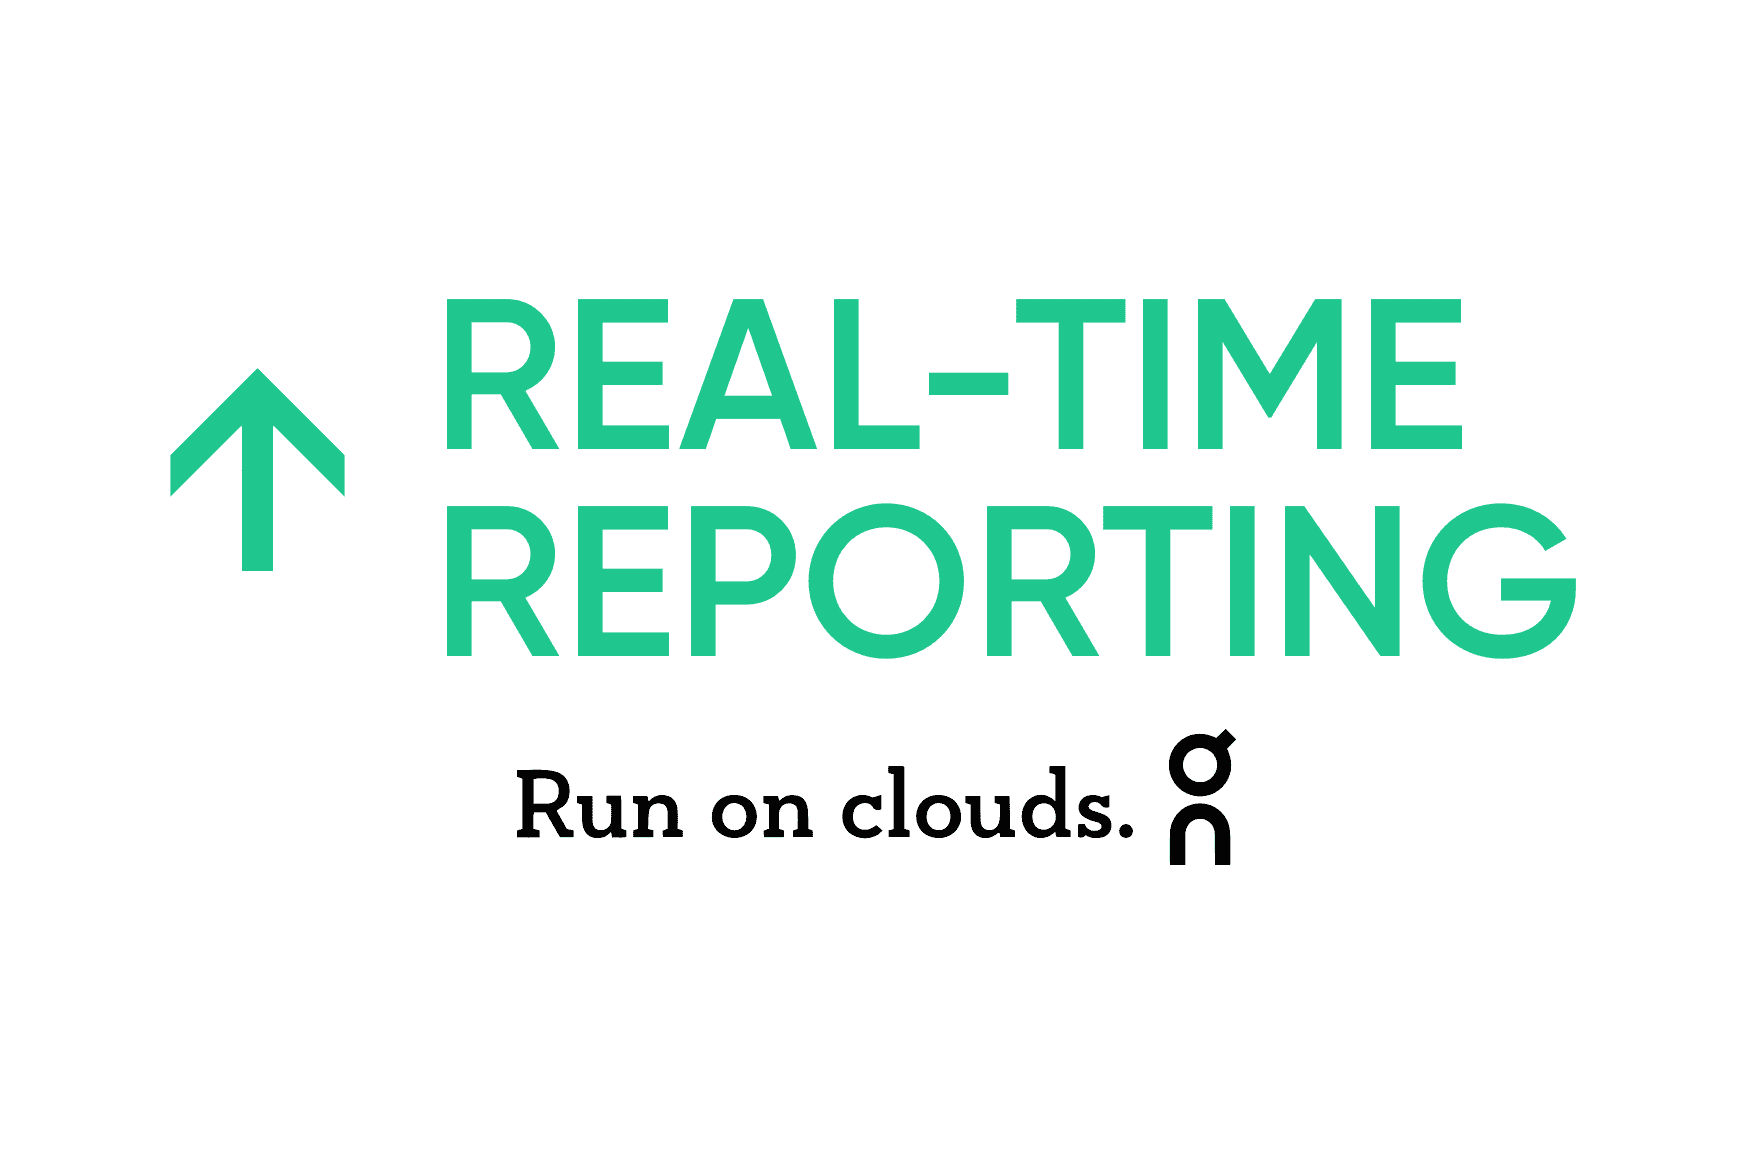 On: Miglioramento del reporting in tempo reale